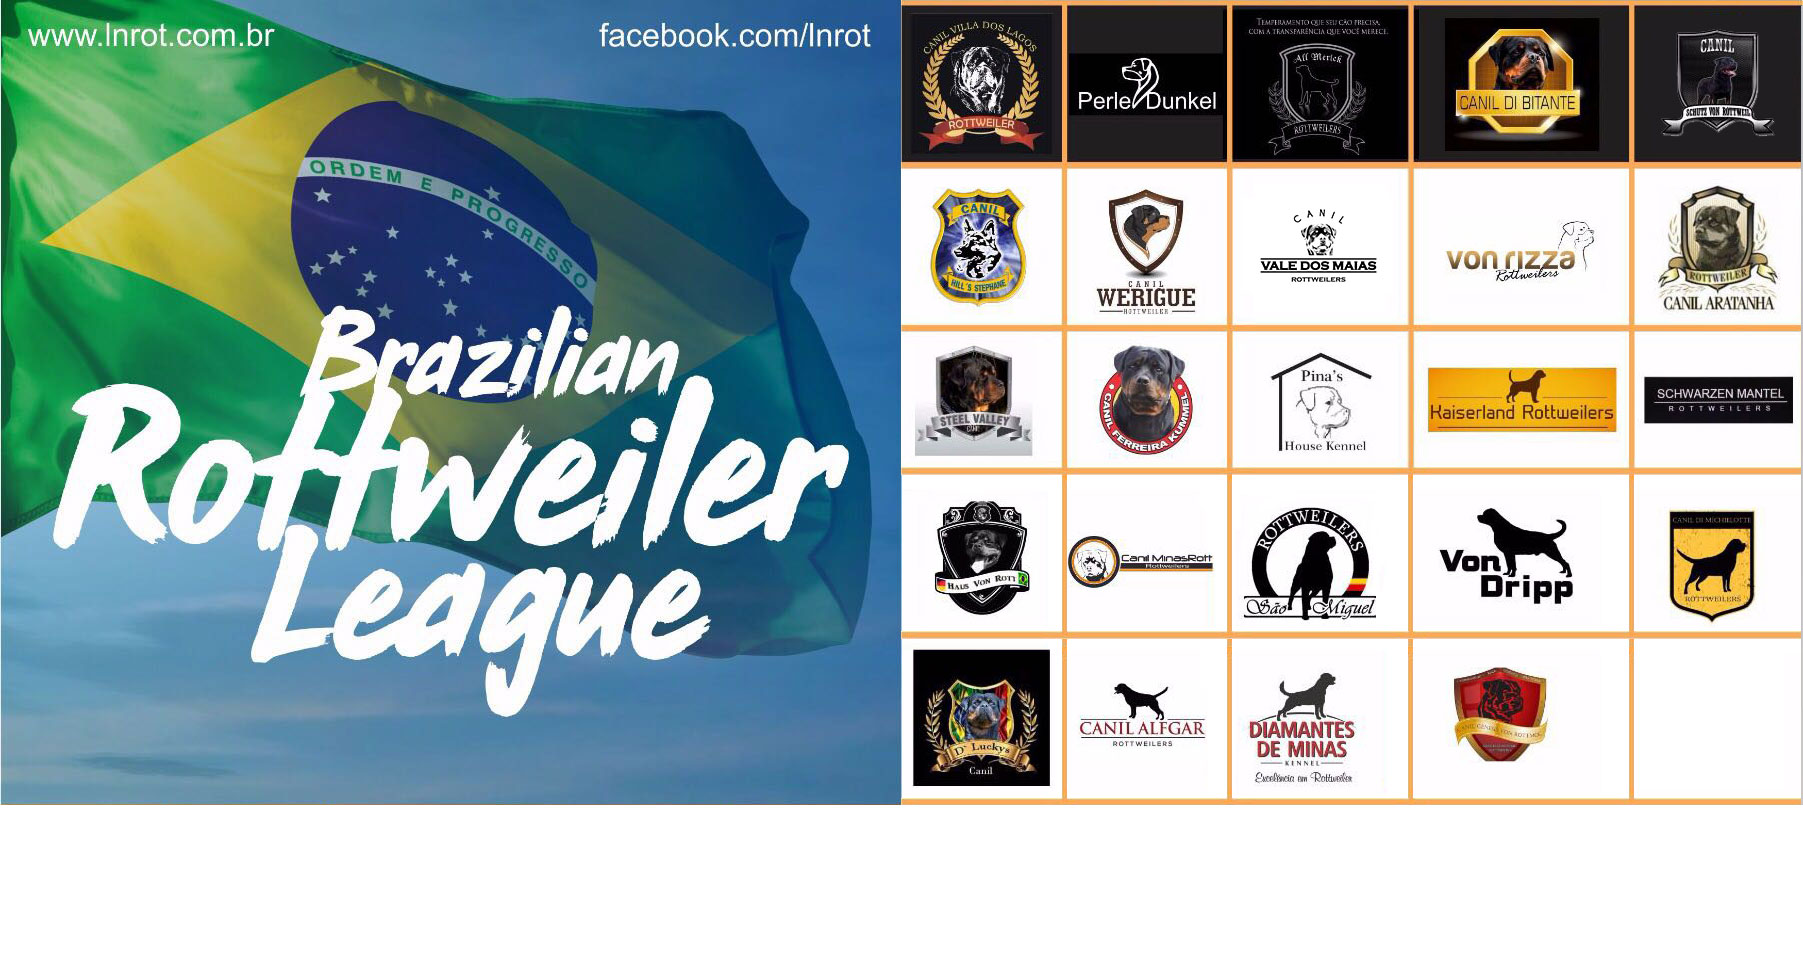 Brazilian Rottwieler League